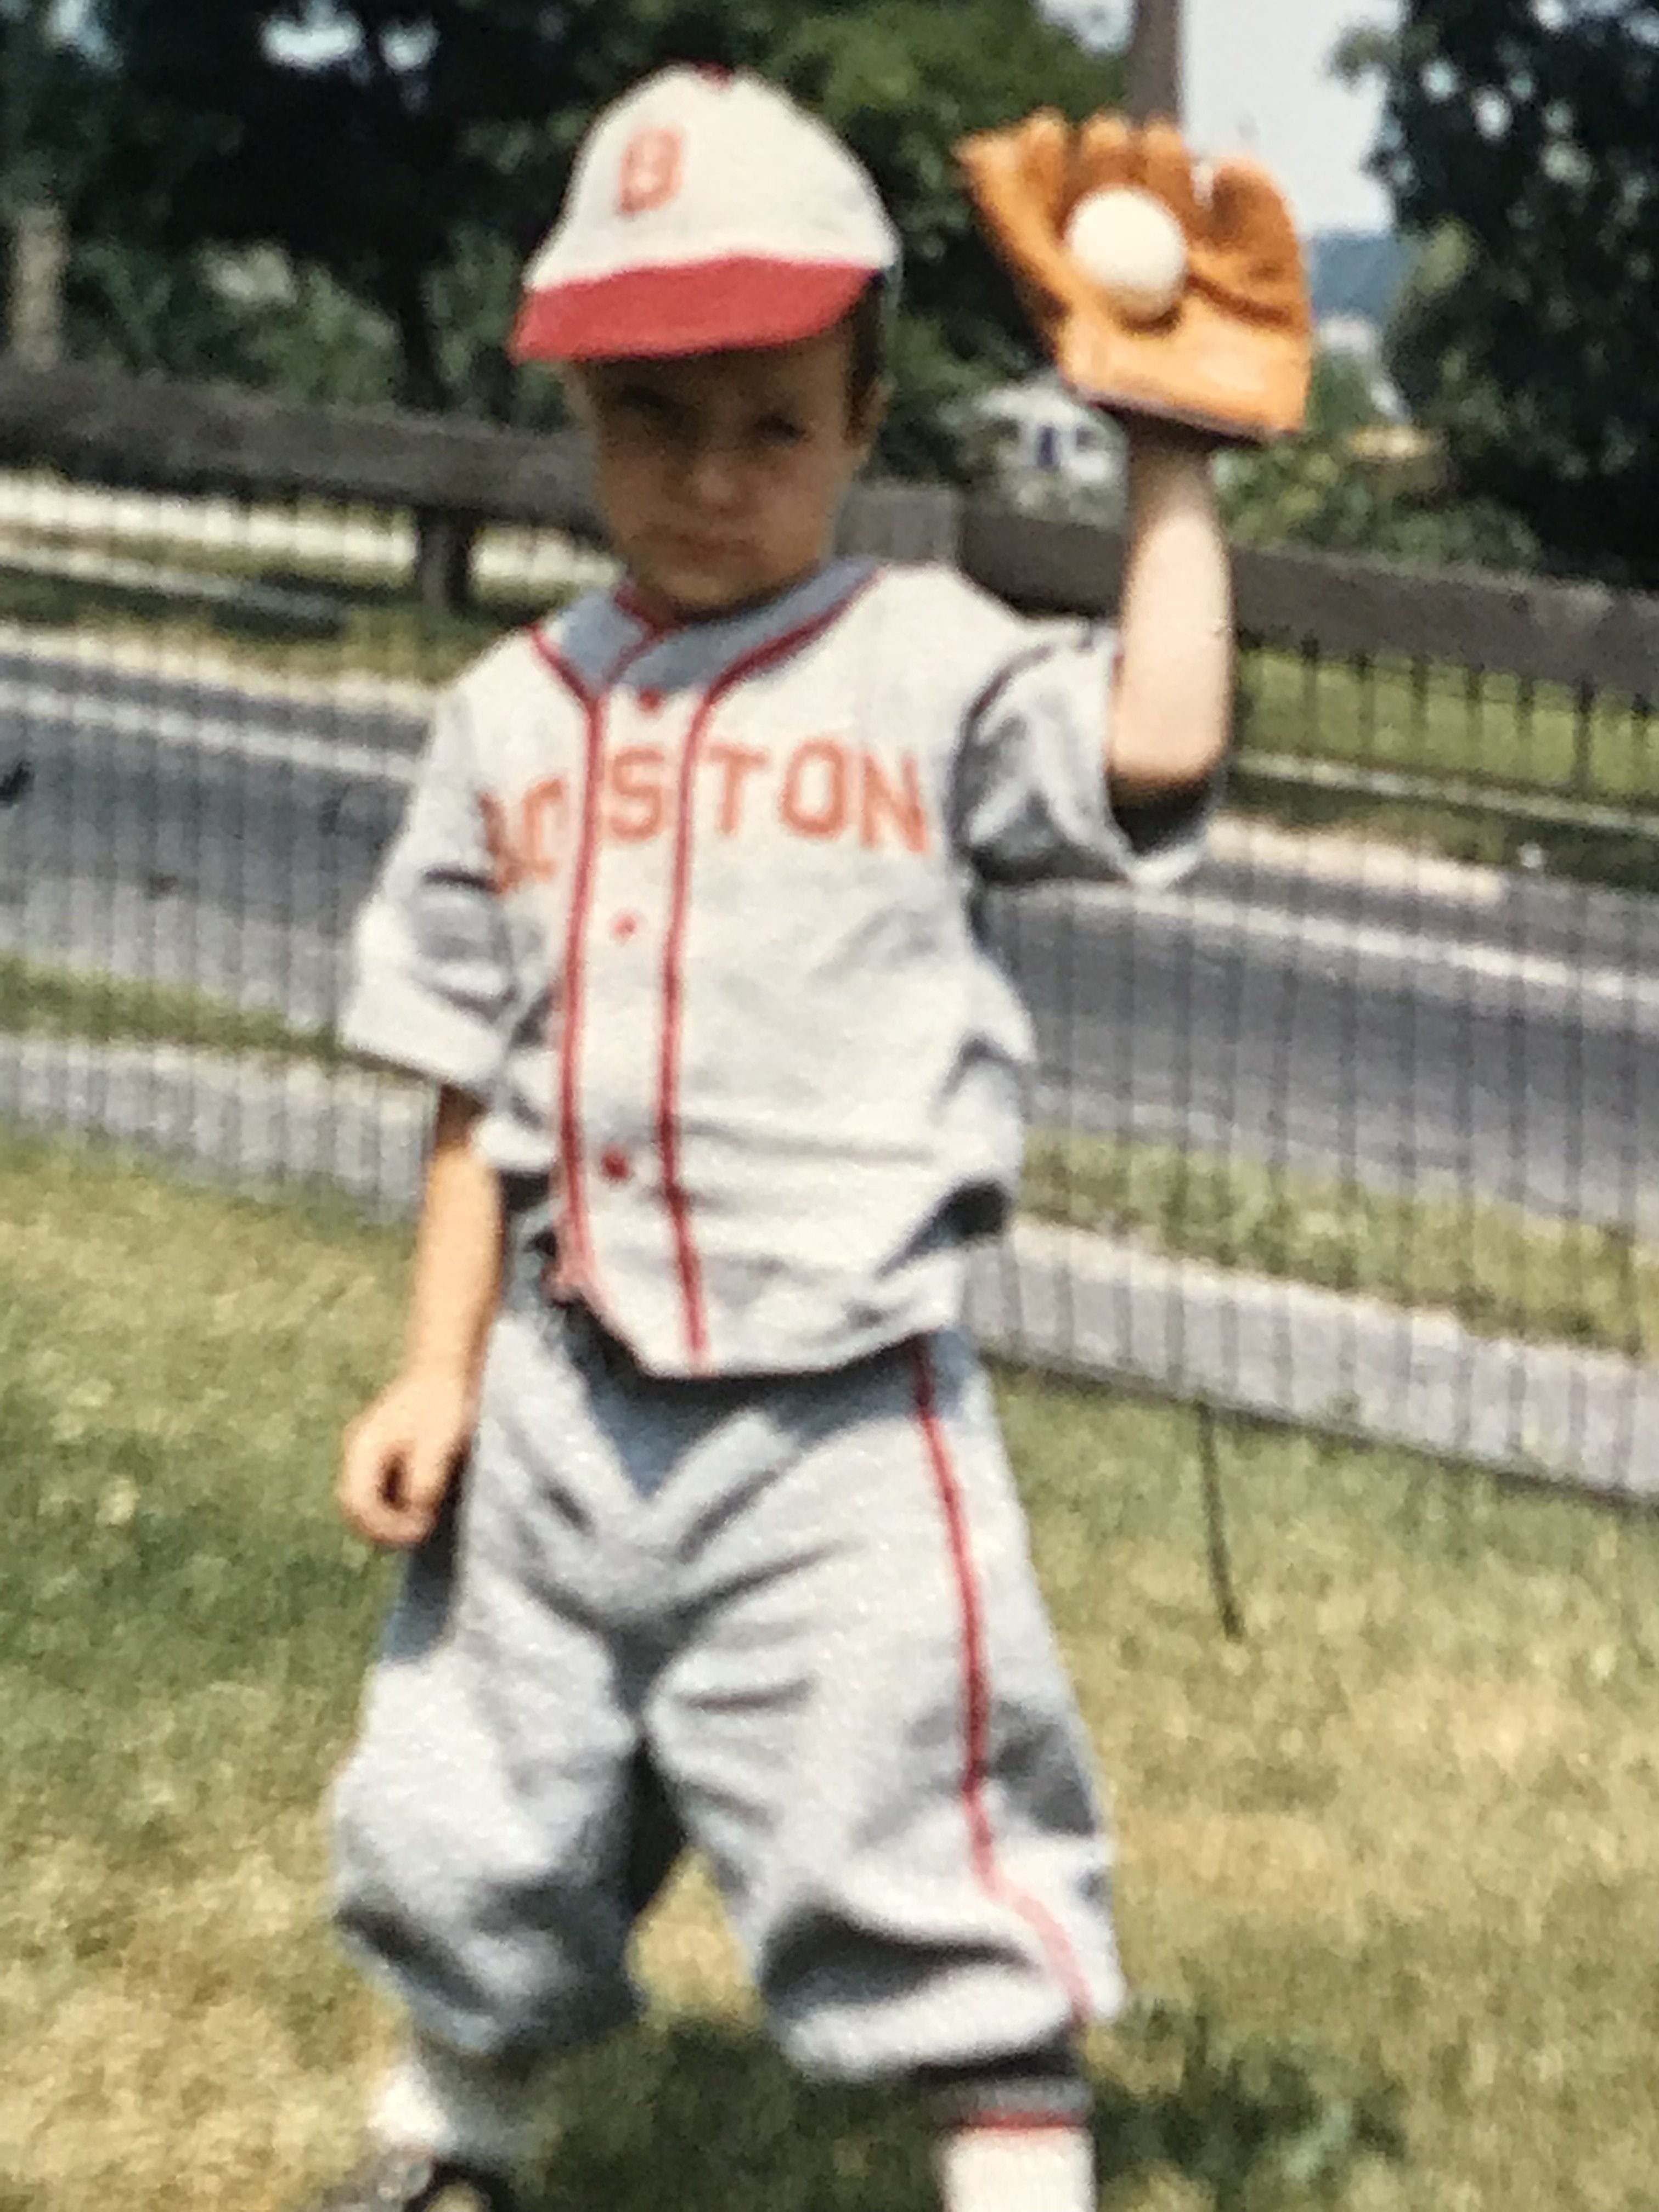 Dan playing baseball as a child